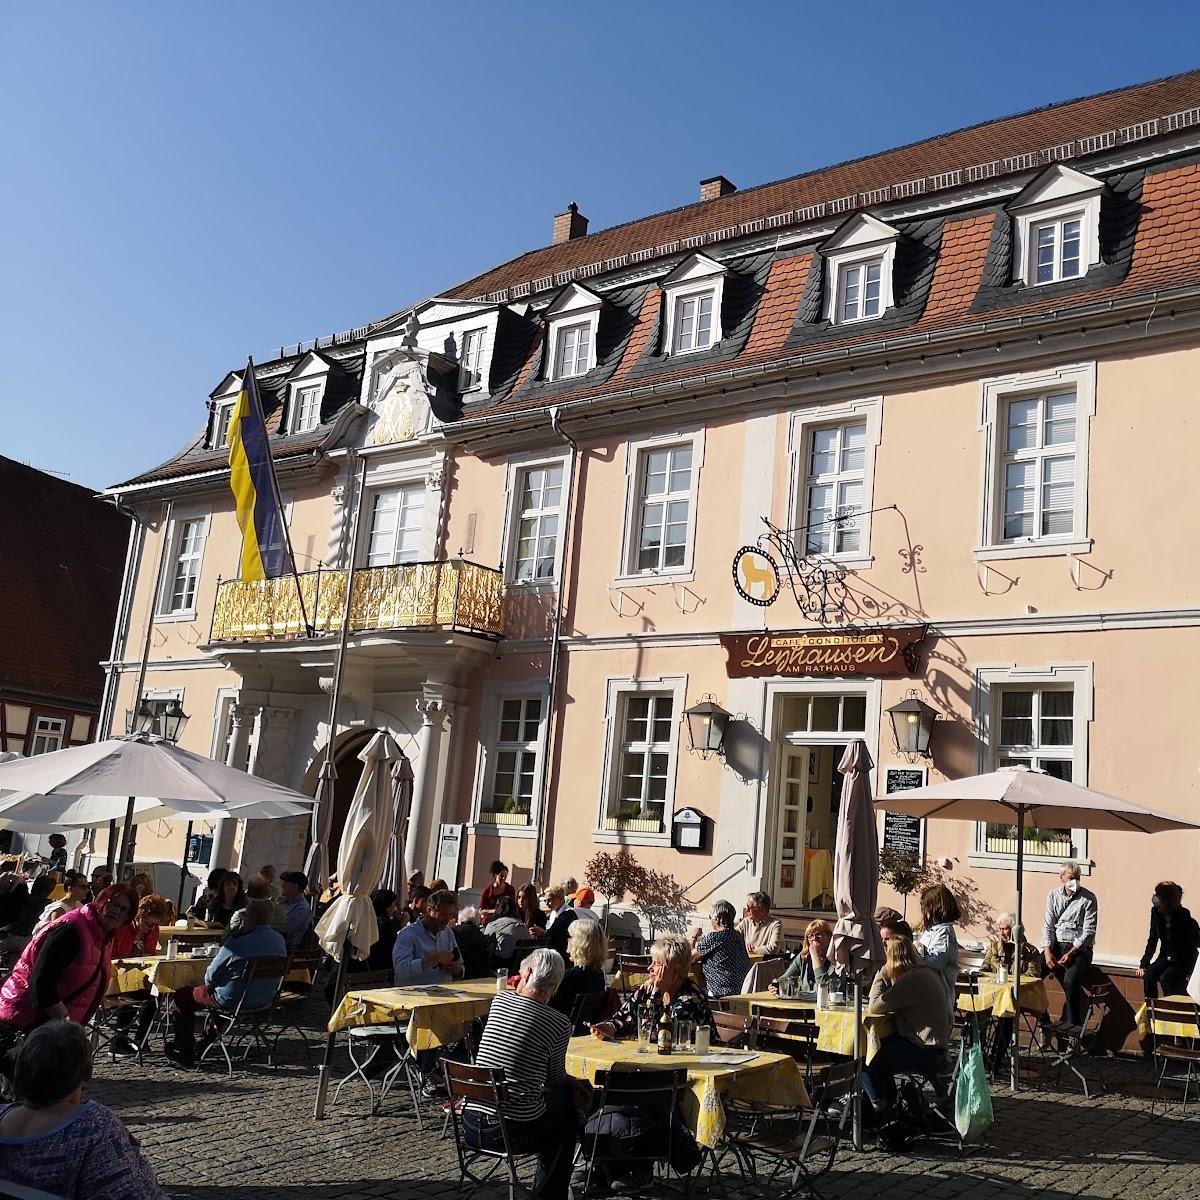 Restaurant "Conditorei Cafe Leyhausen" in Michelstadt